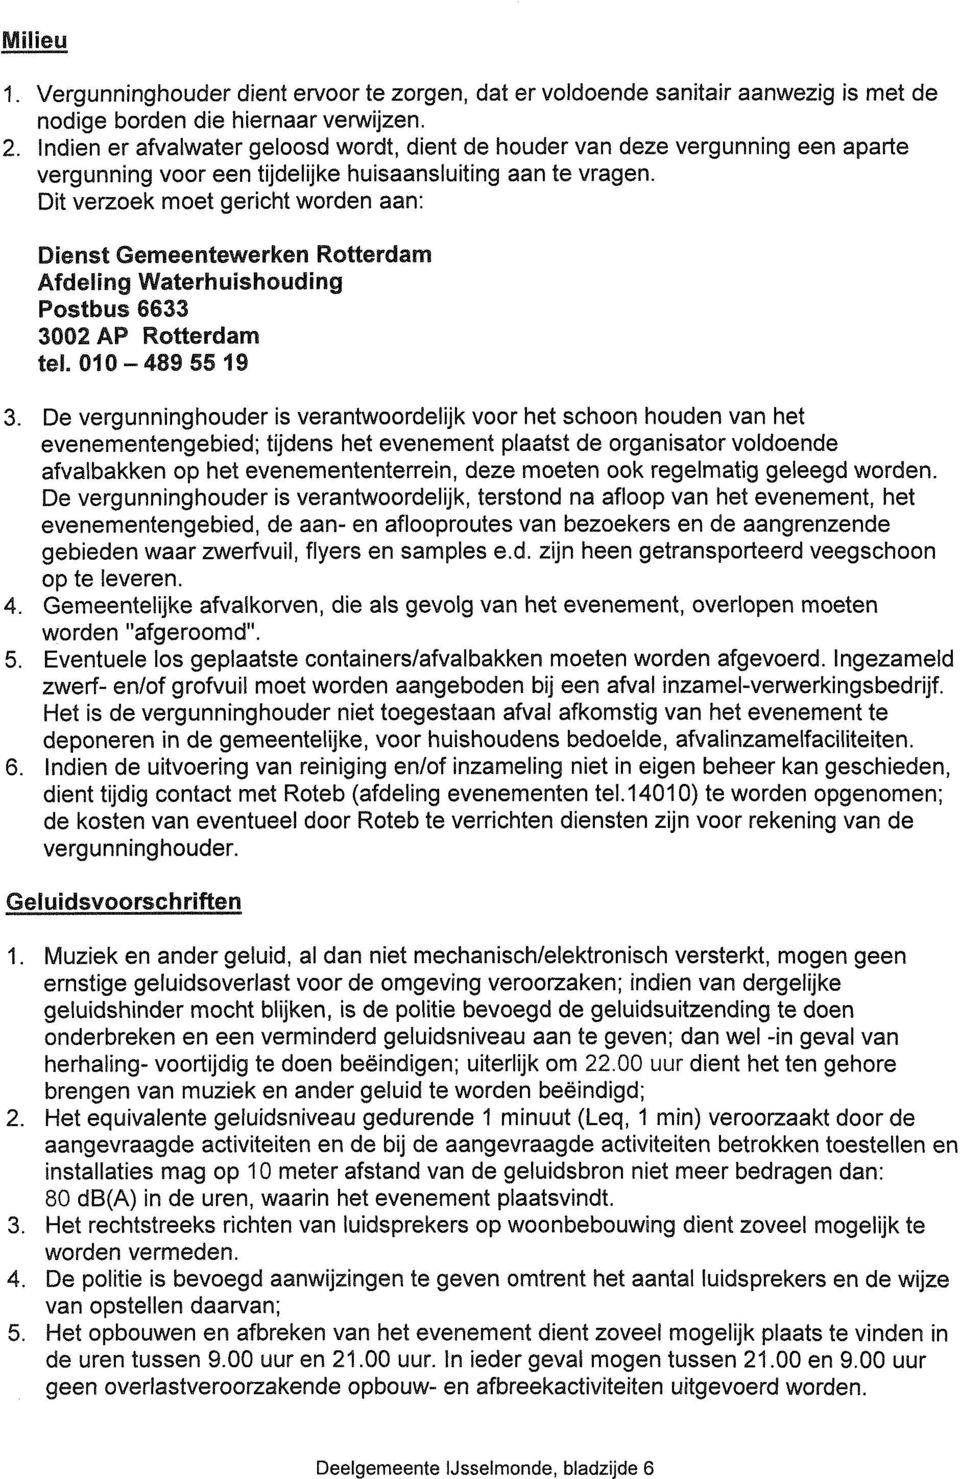 Dit verzoek moet gericht worden aan: Dienst Gemeentewerken Rotterdam Afdeling Waterhuishouding Postbus 6633 3002 AP Rotterdam tel. 010-4895519 3.